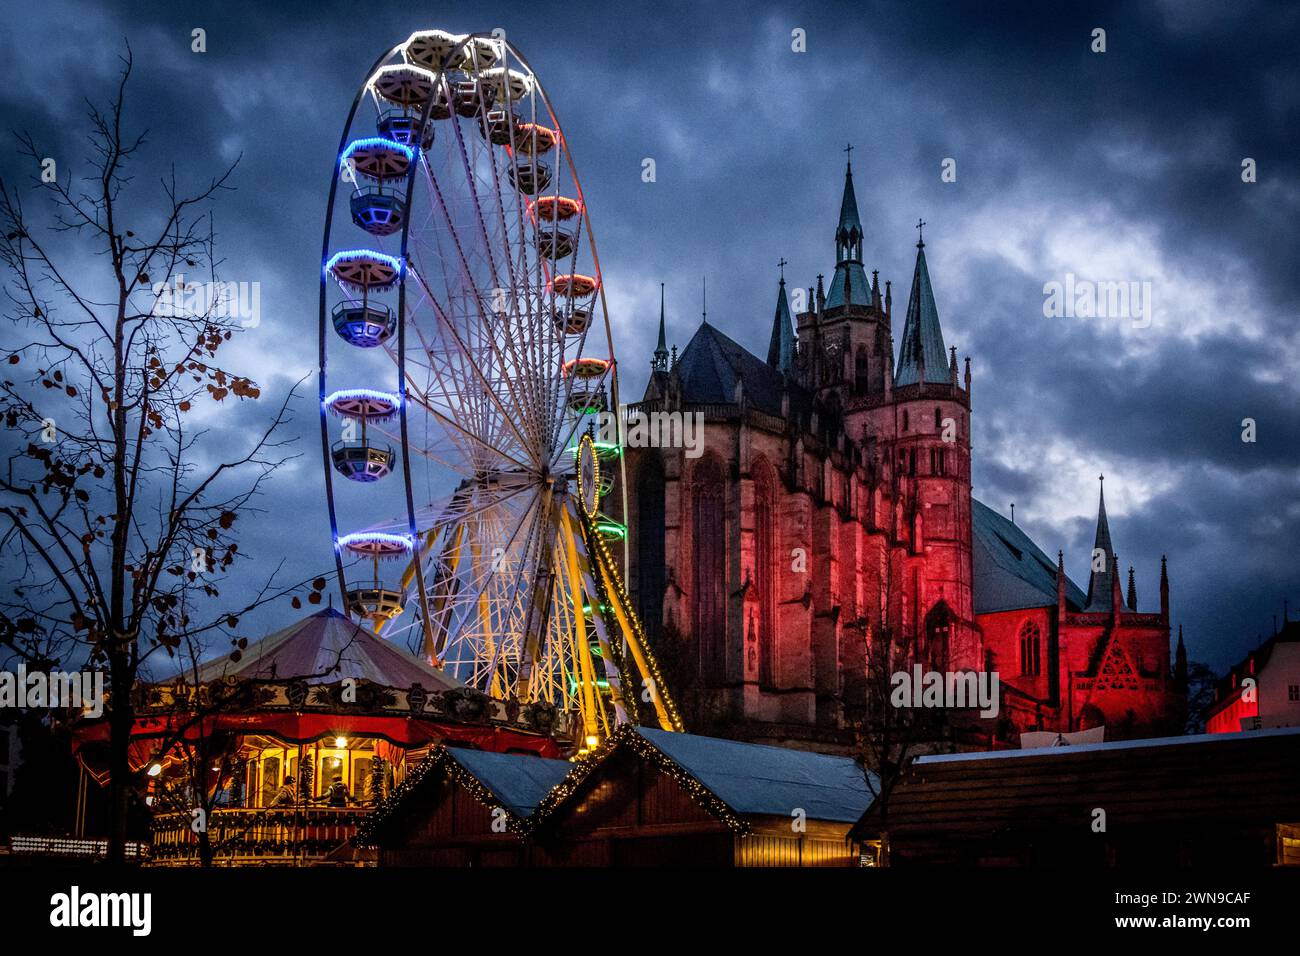 Ein beleuchtetes Riesenrad vor dem Hintergrund einer Kathedrale und einem dunklen Nachthimmel, Erfurter Weihnachtsmarkt Erfurt Stock Photo